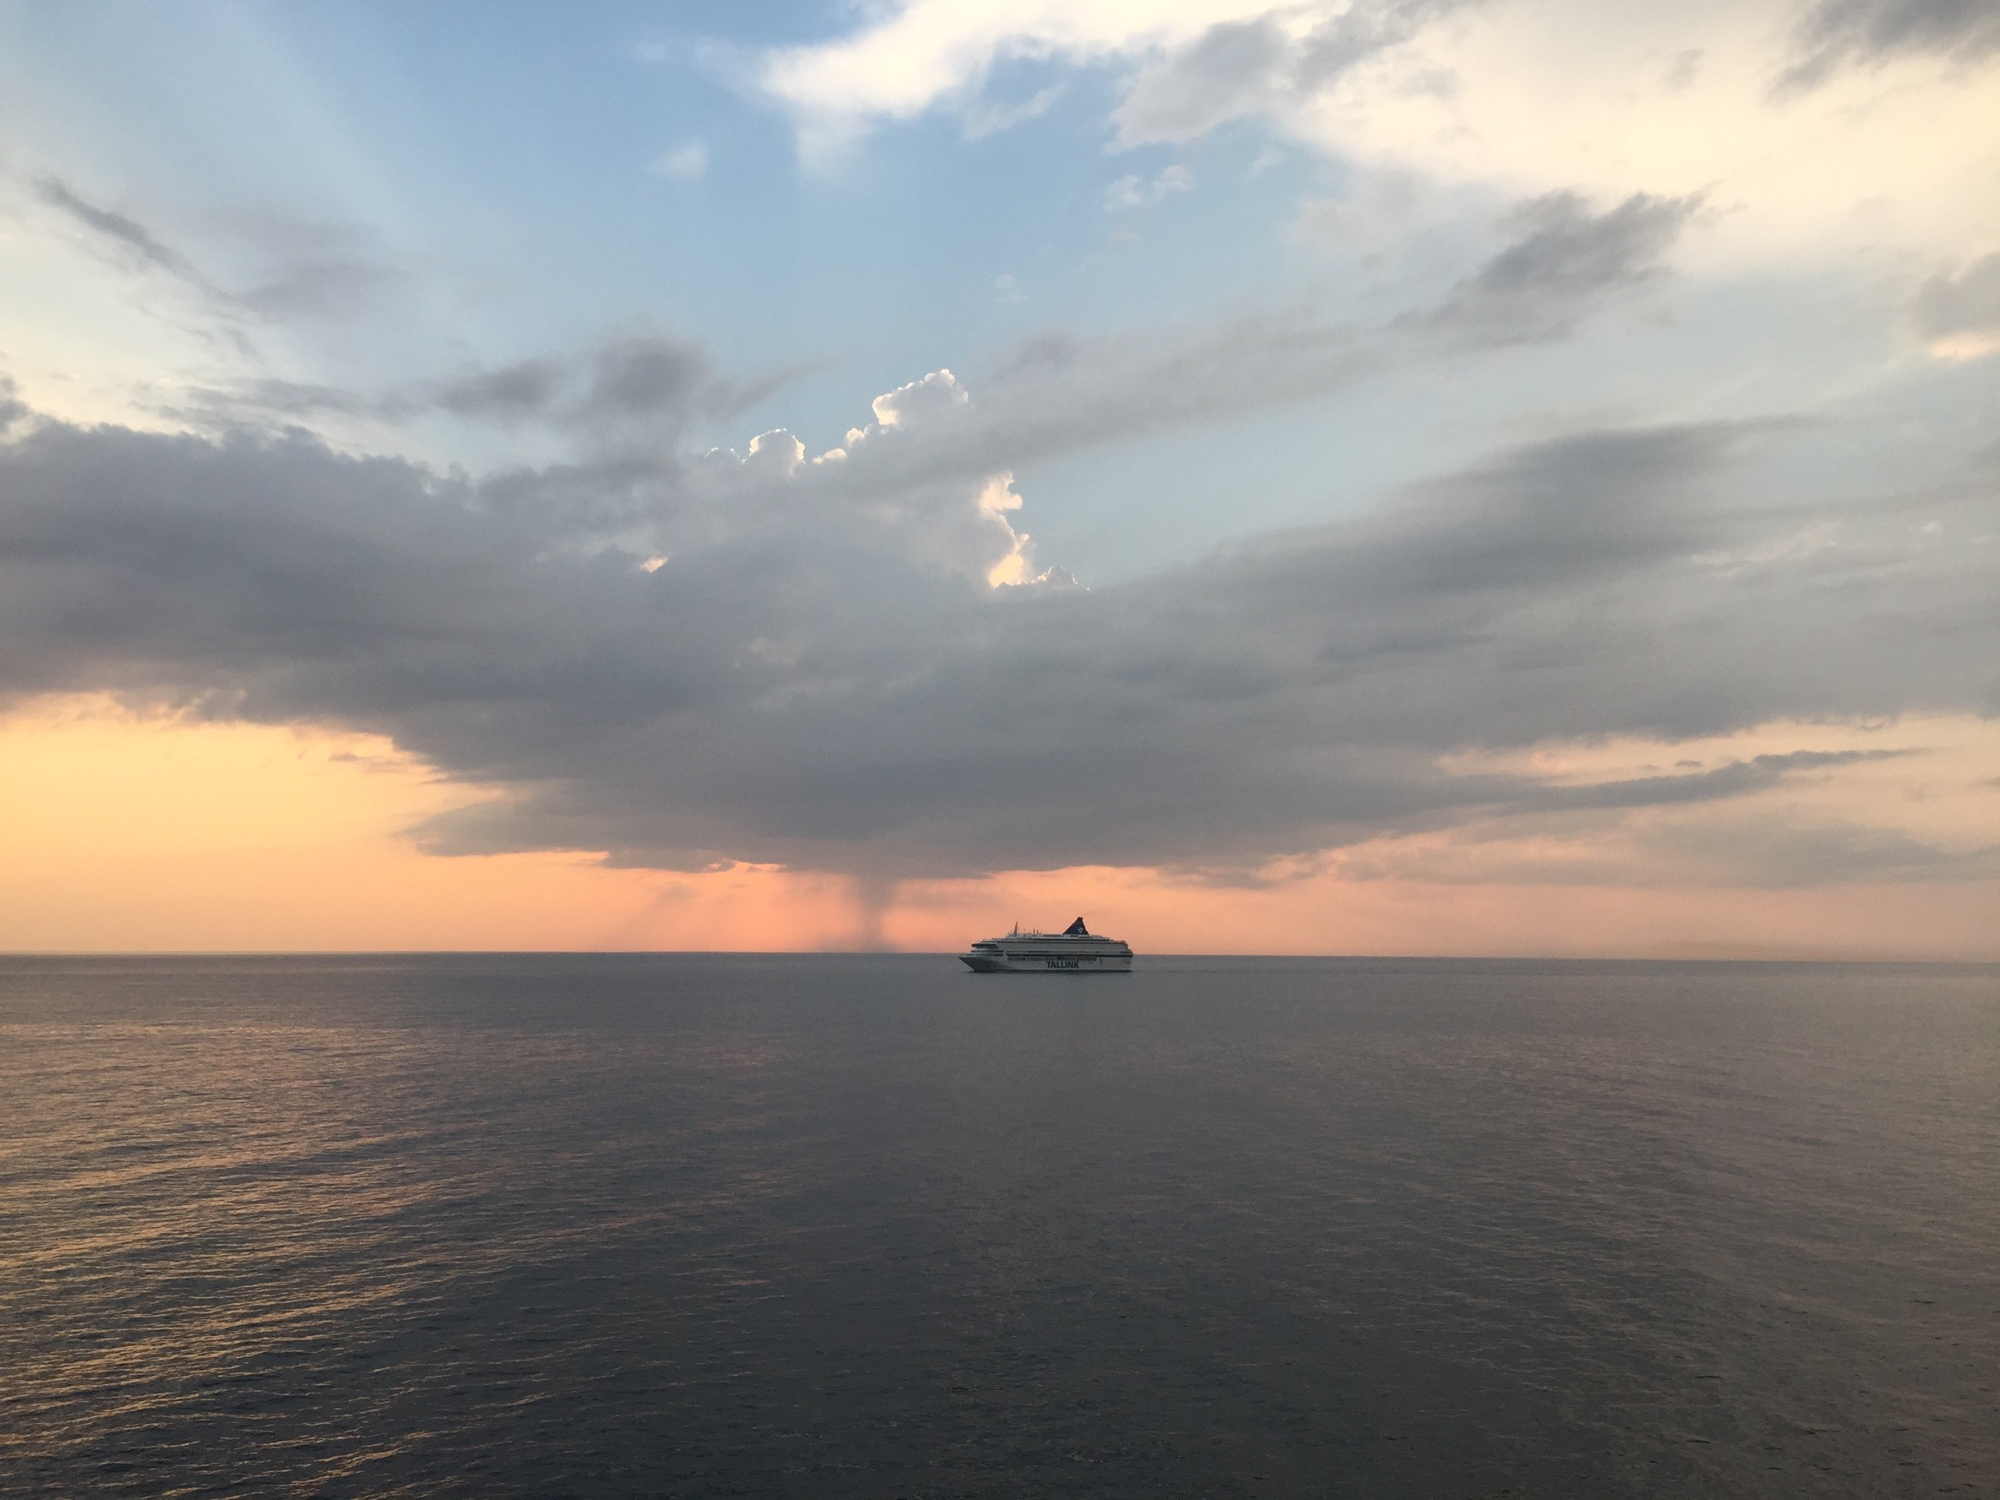 Blick aufs Meer, rosafarbener Sonnenuntergangshimmel mit dramatischen Wolken, ein weiteres Fährschiff am Horizont